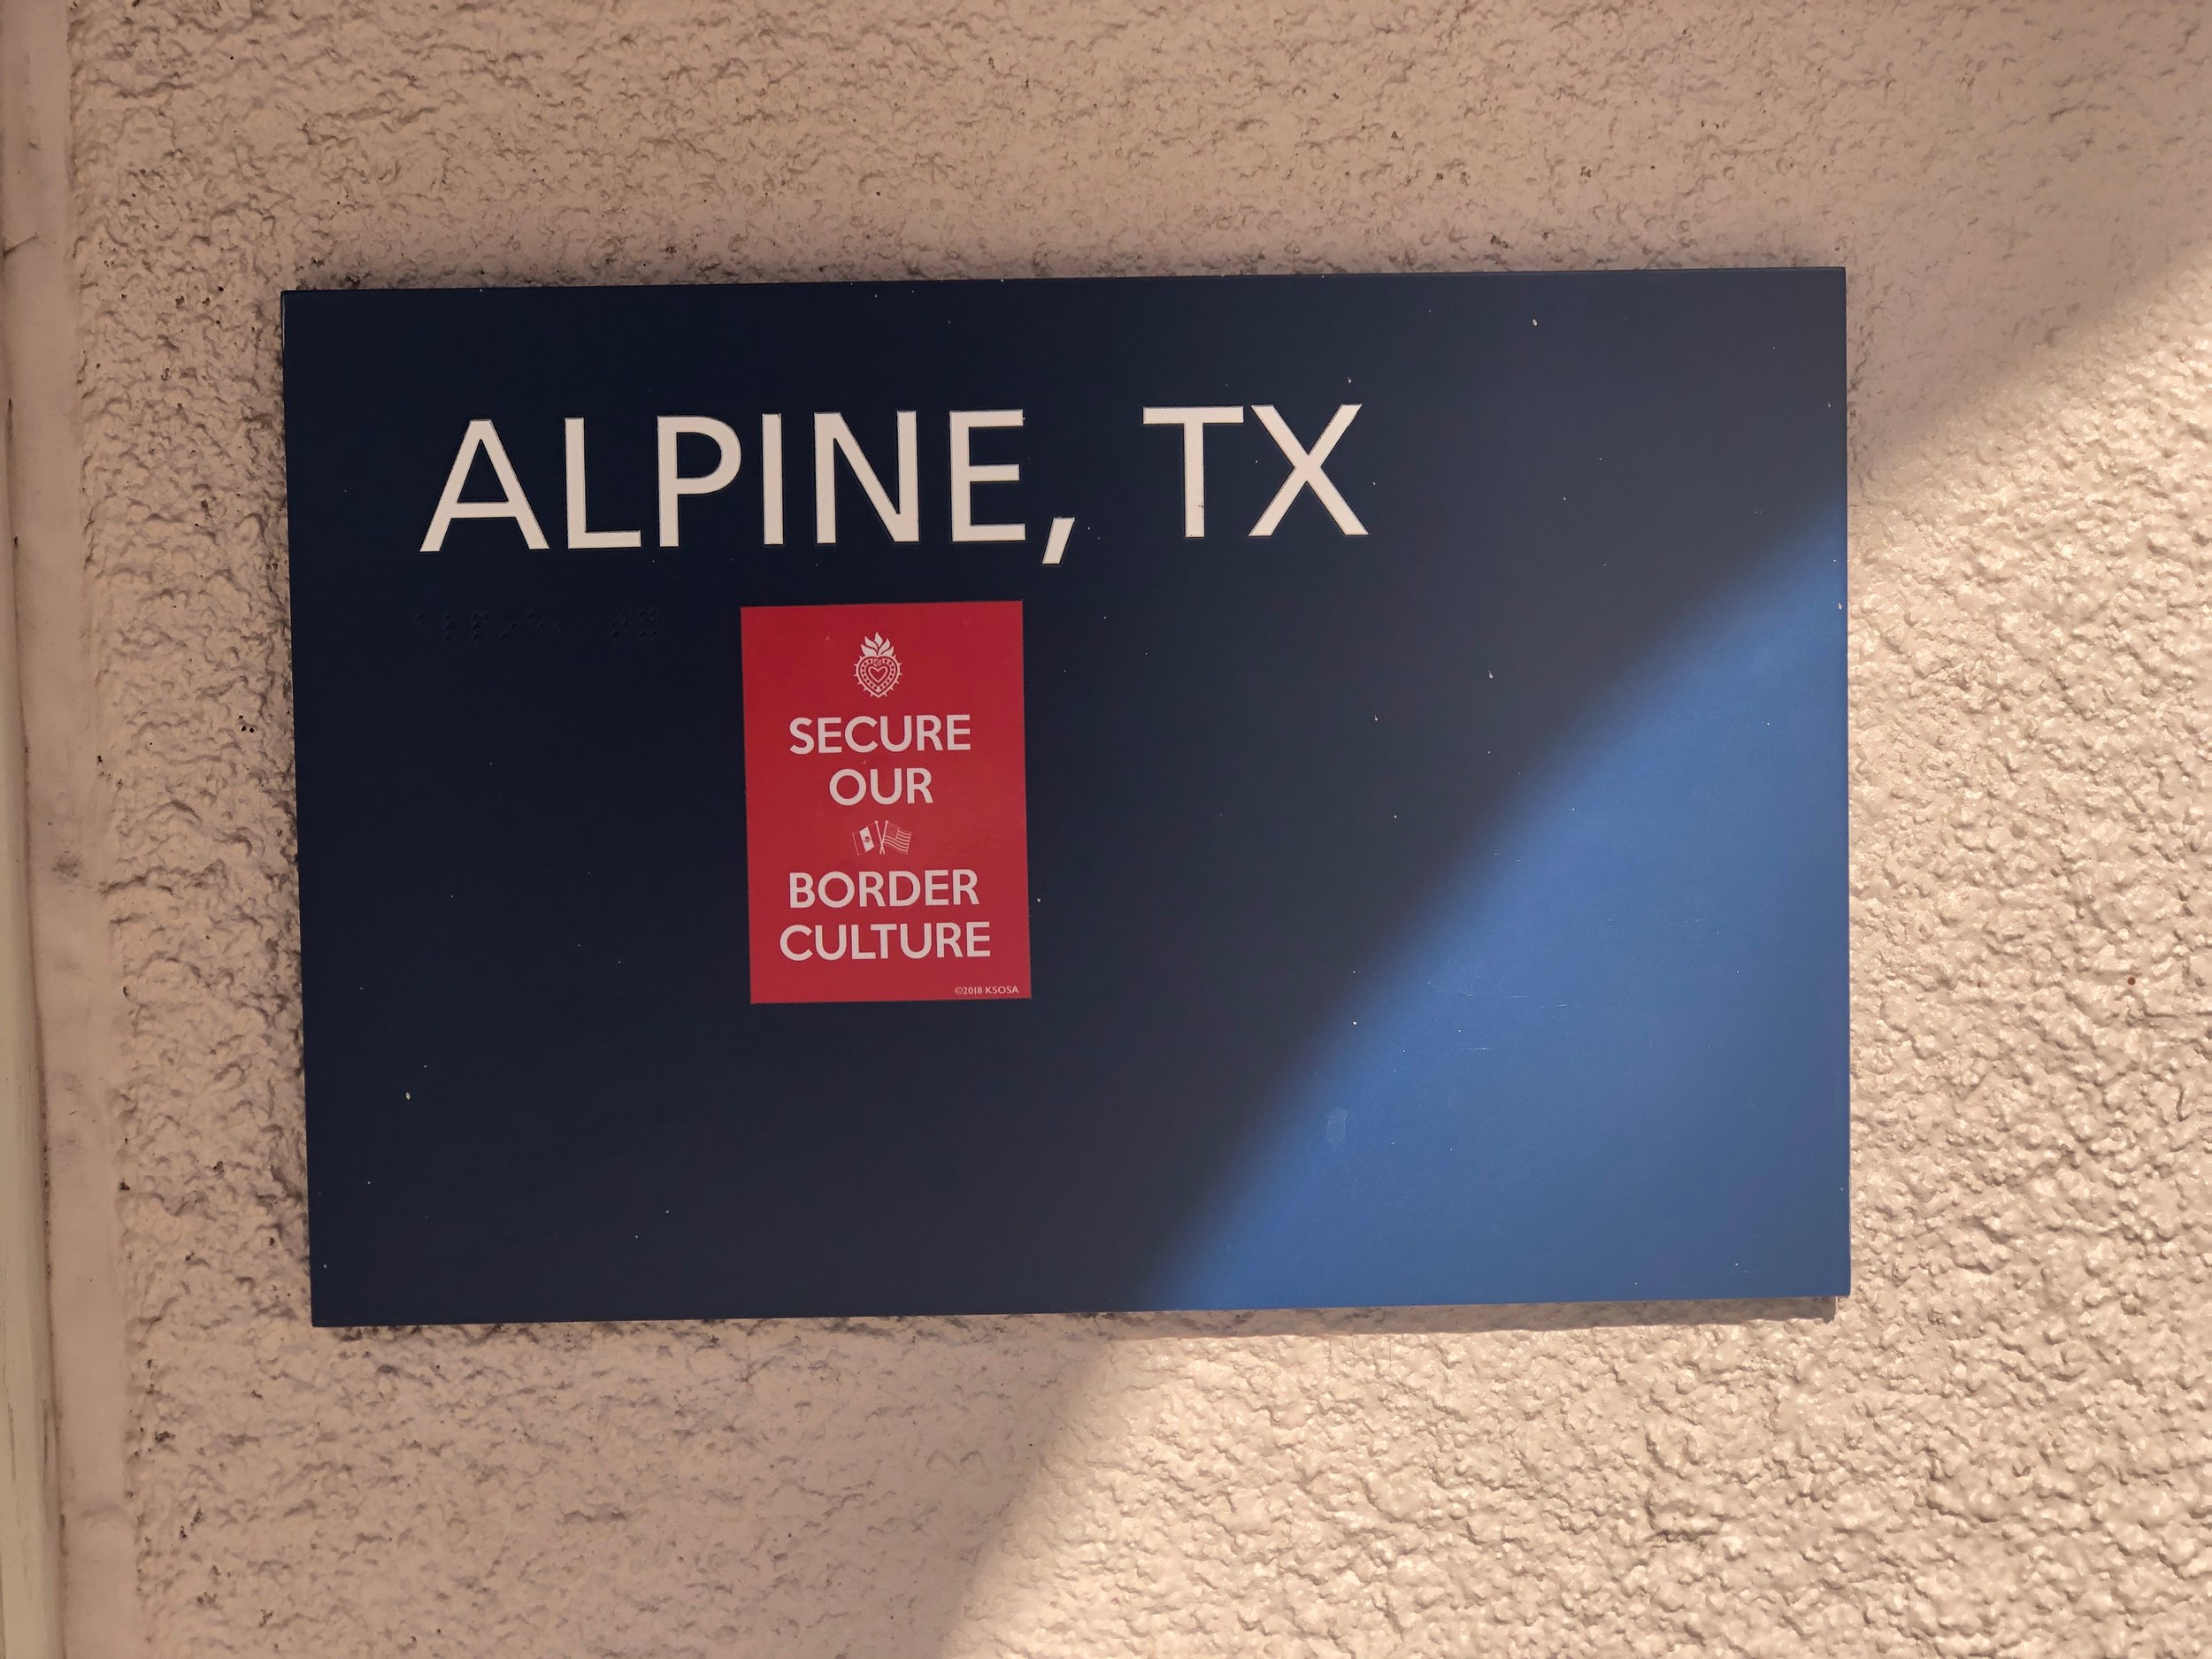  Alpine, Texas November 23, 2018 Photo by KSosa 